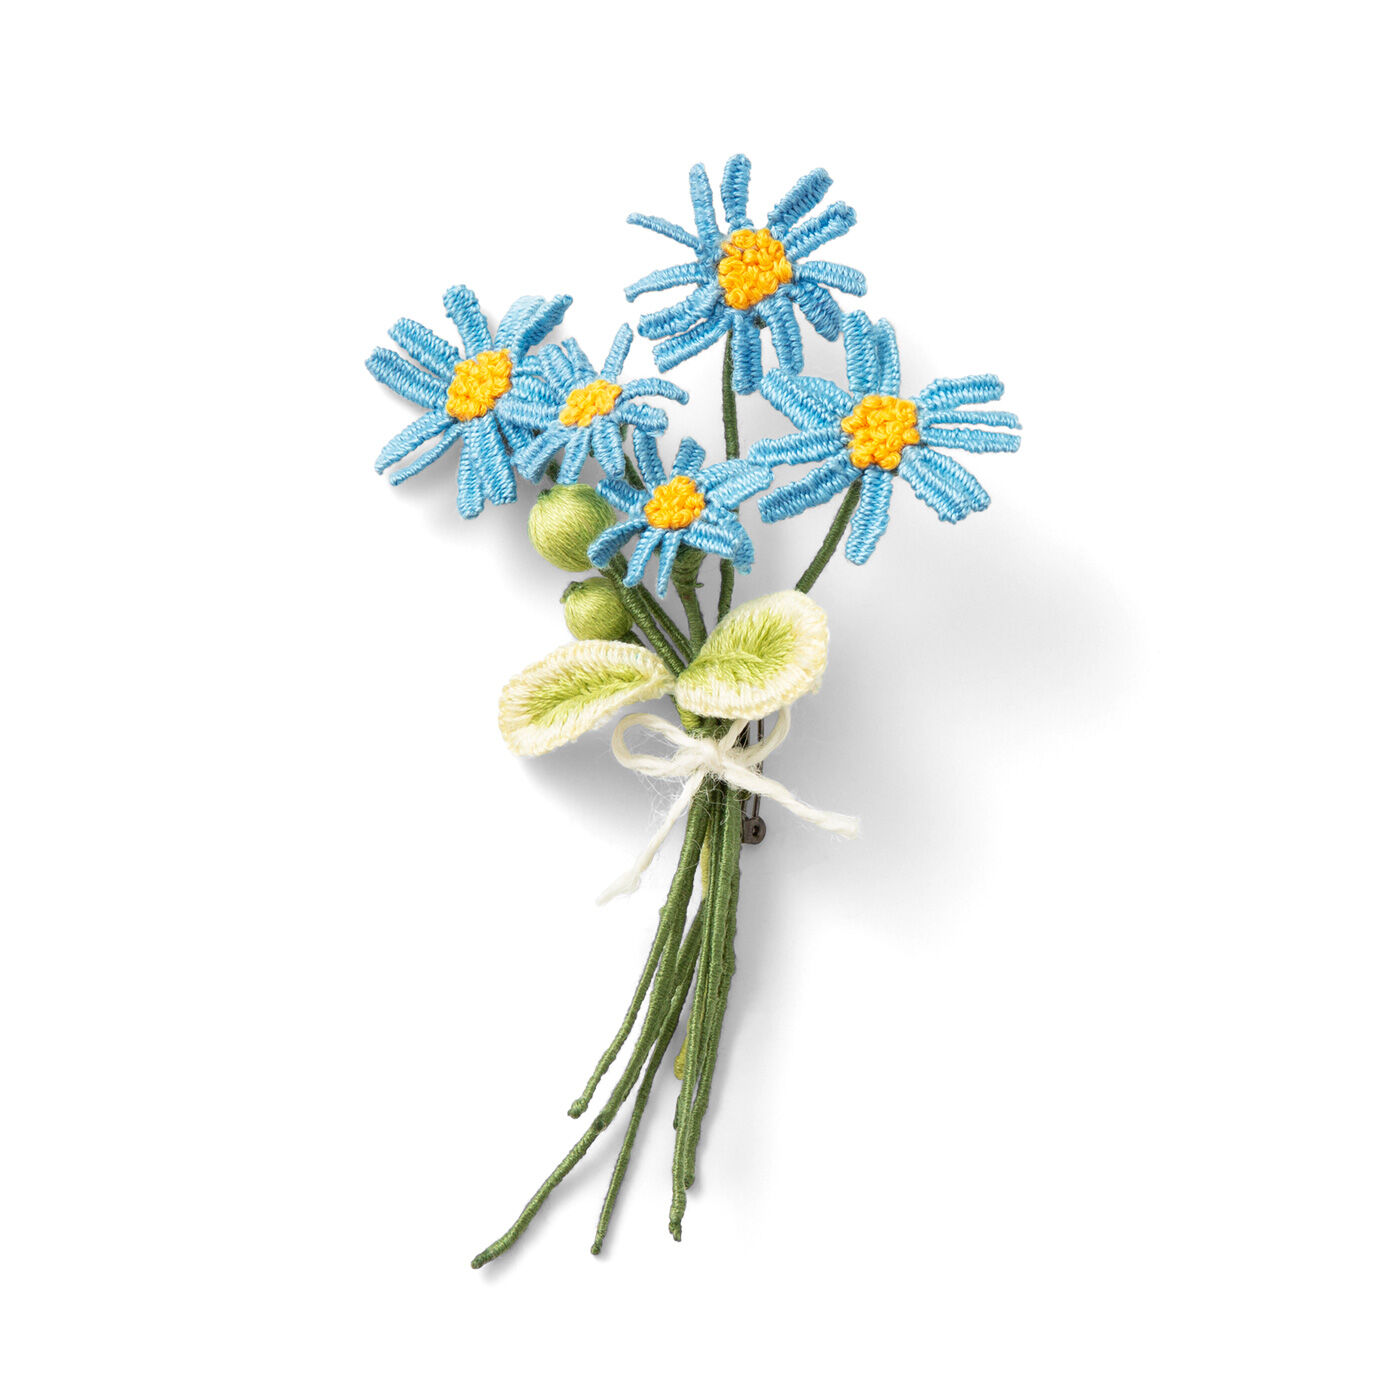 クチュリエ|多彩な花を咲かせて立体的な刺しゅうを楽しむ スタンプワークの会|ブルーデイジー